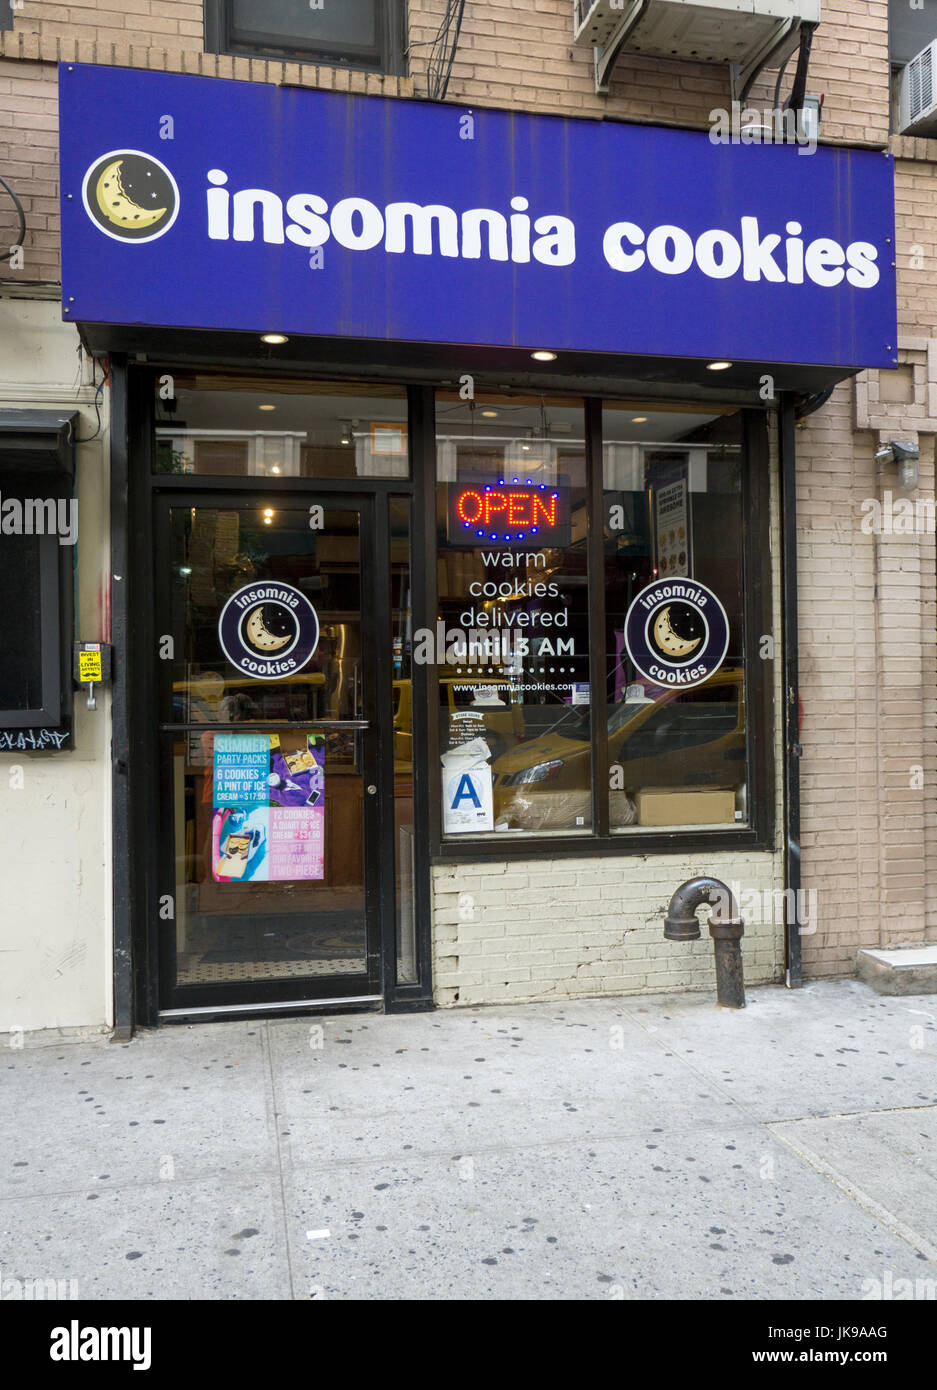 L'esterno dell'insonnia Cookies, una panetteria nell'East Village che è specializzata nella fornitura di biscotti caldi fino alle 3 del mattino. Foto Stock